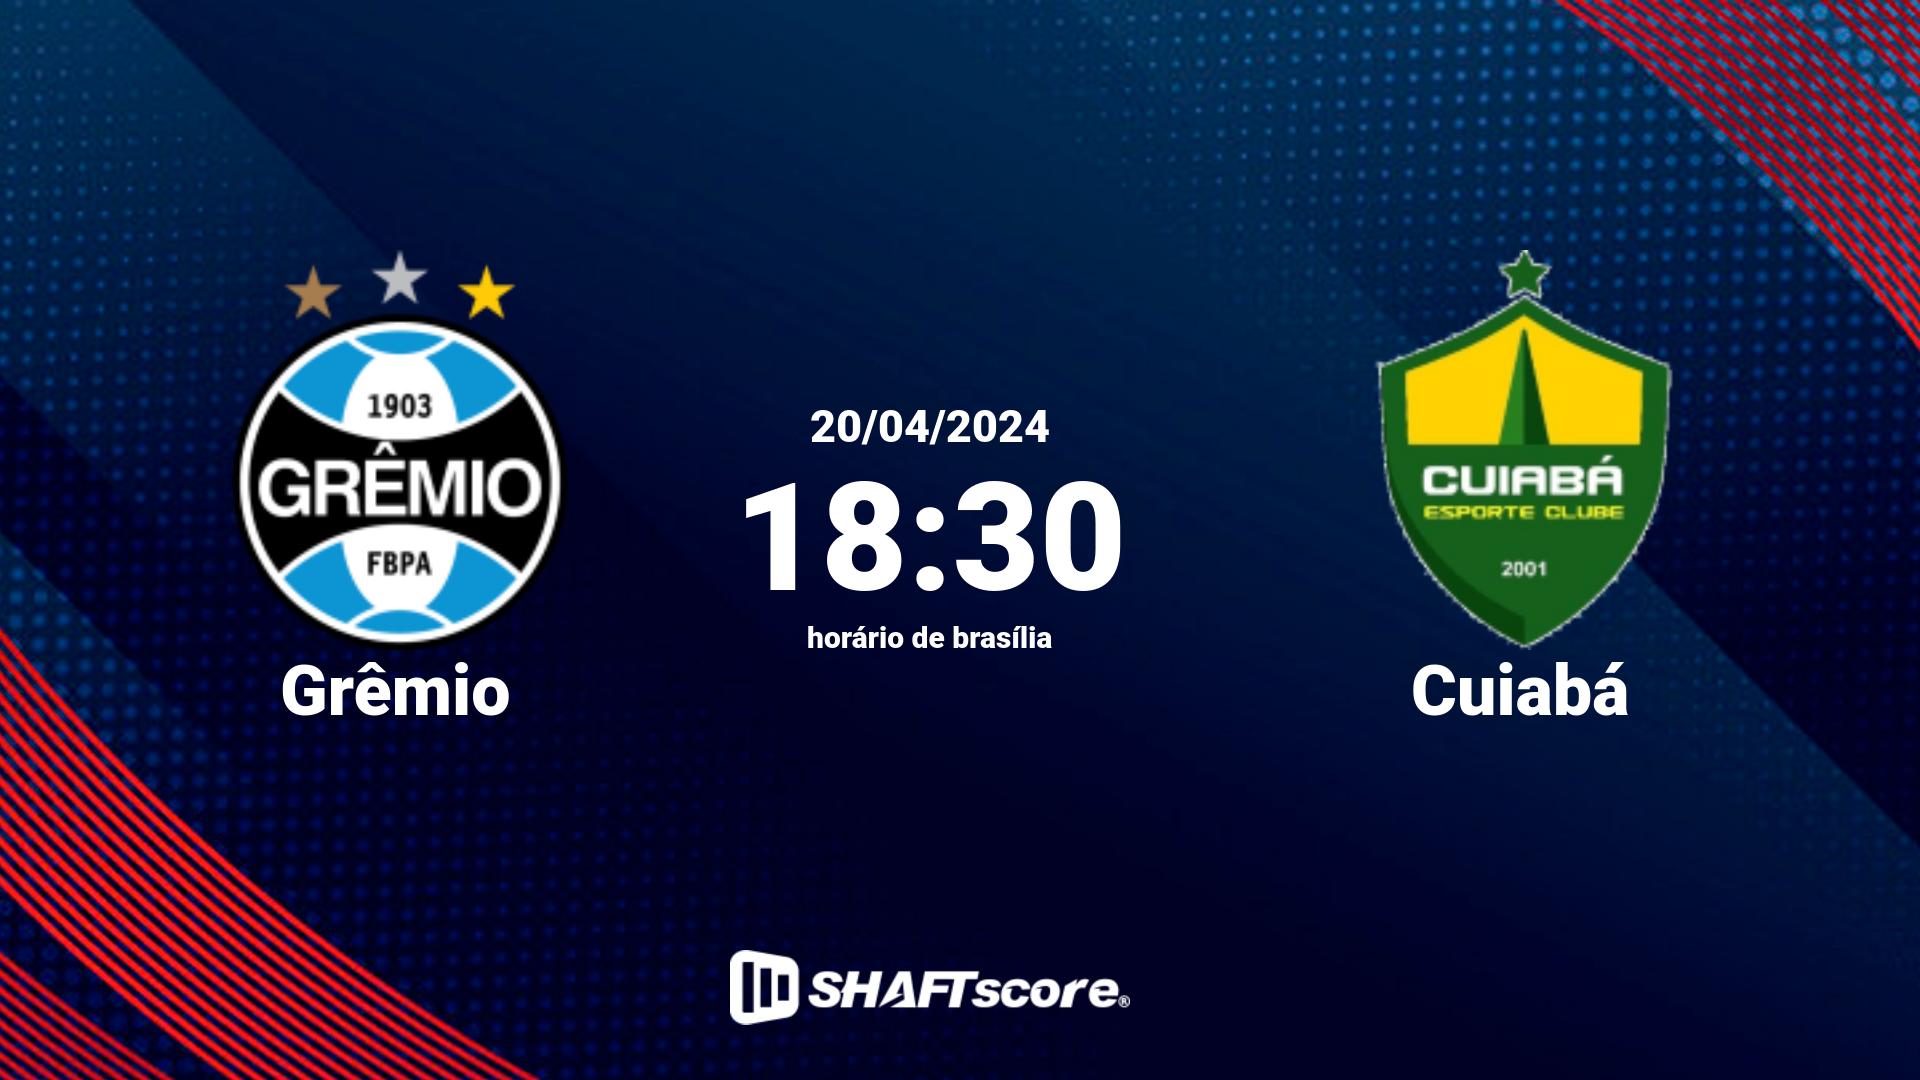 Estatísticas do jogo Grêmio vs Cuiabá 20.04 18:30